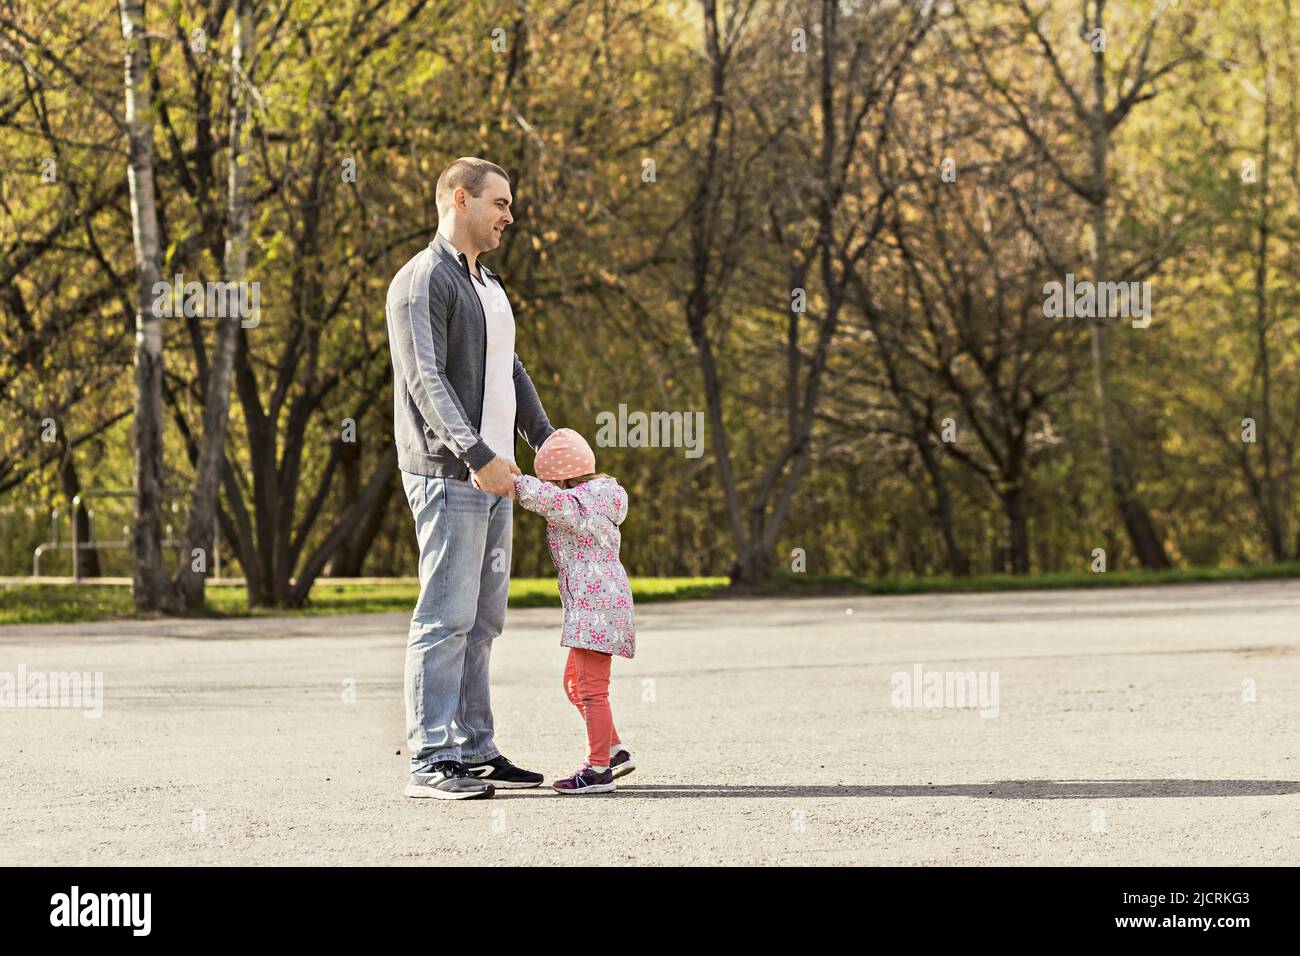 Papa spielt mit seinen Töchtern im Park. Ein Mädchen herumwirbeln. Familie. Stockfoto